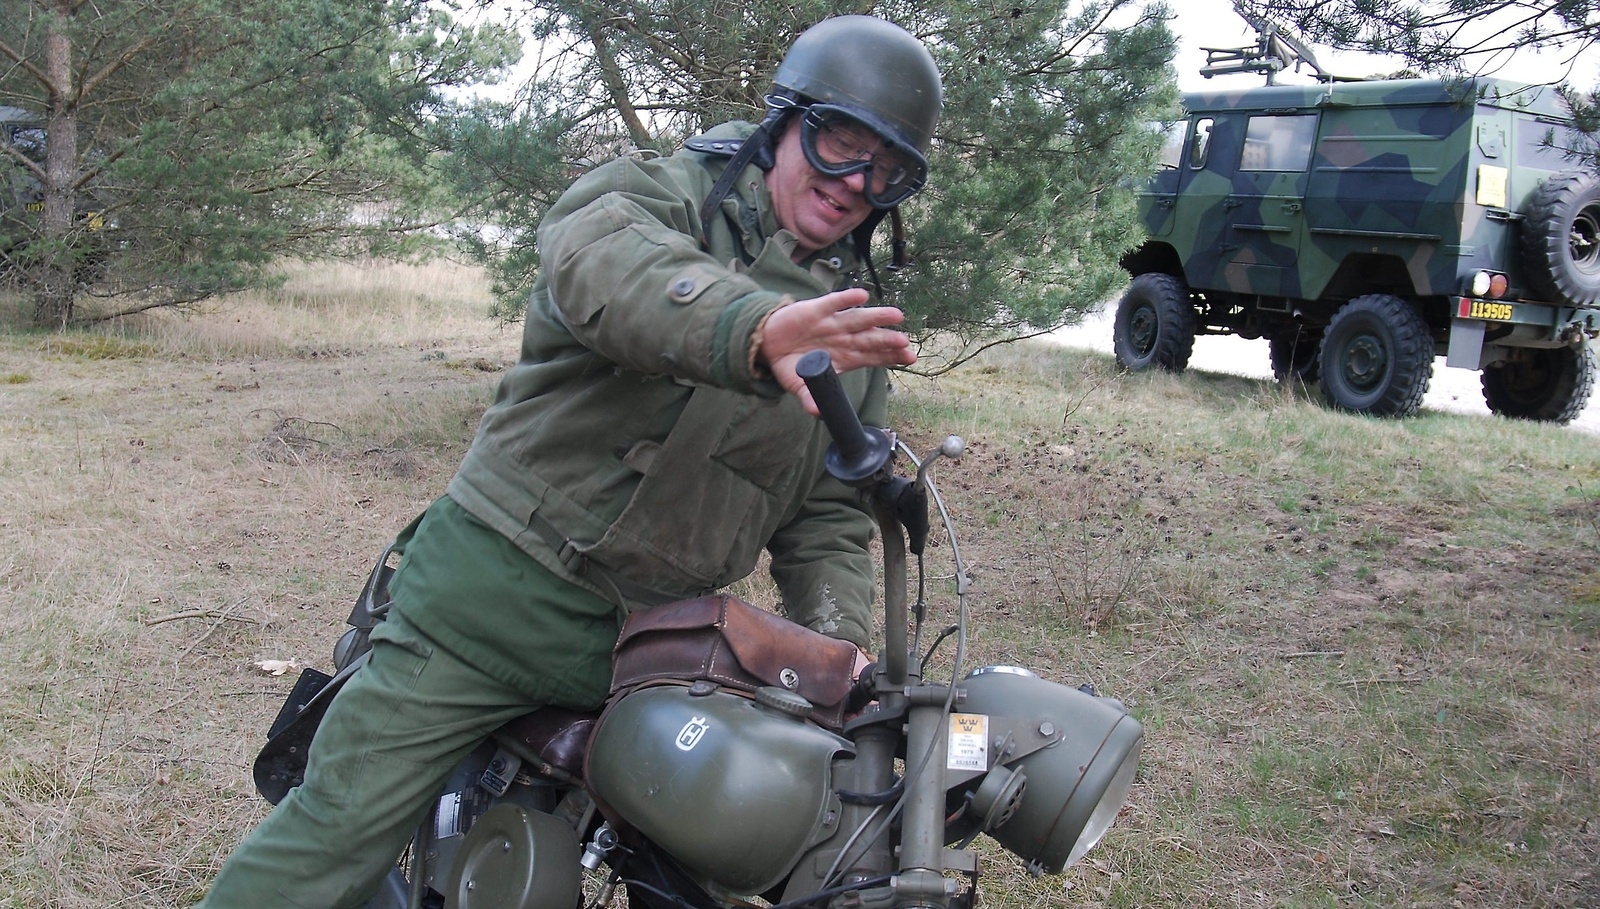 Mats Bergvall med sin militärmotorcykel, en Husqvarna, -69 års modell. Foto: Maja Ögren Andersson